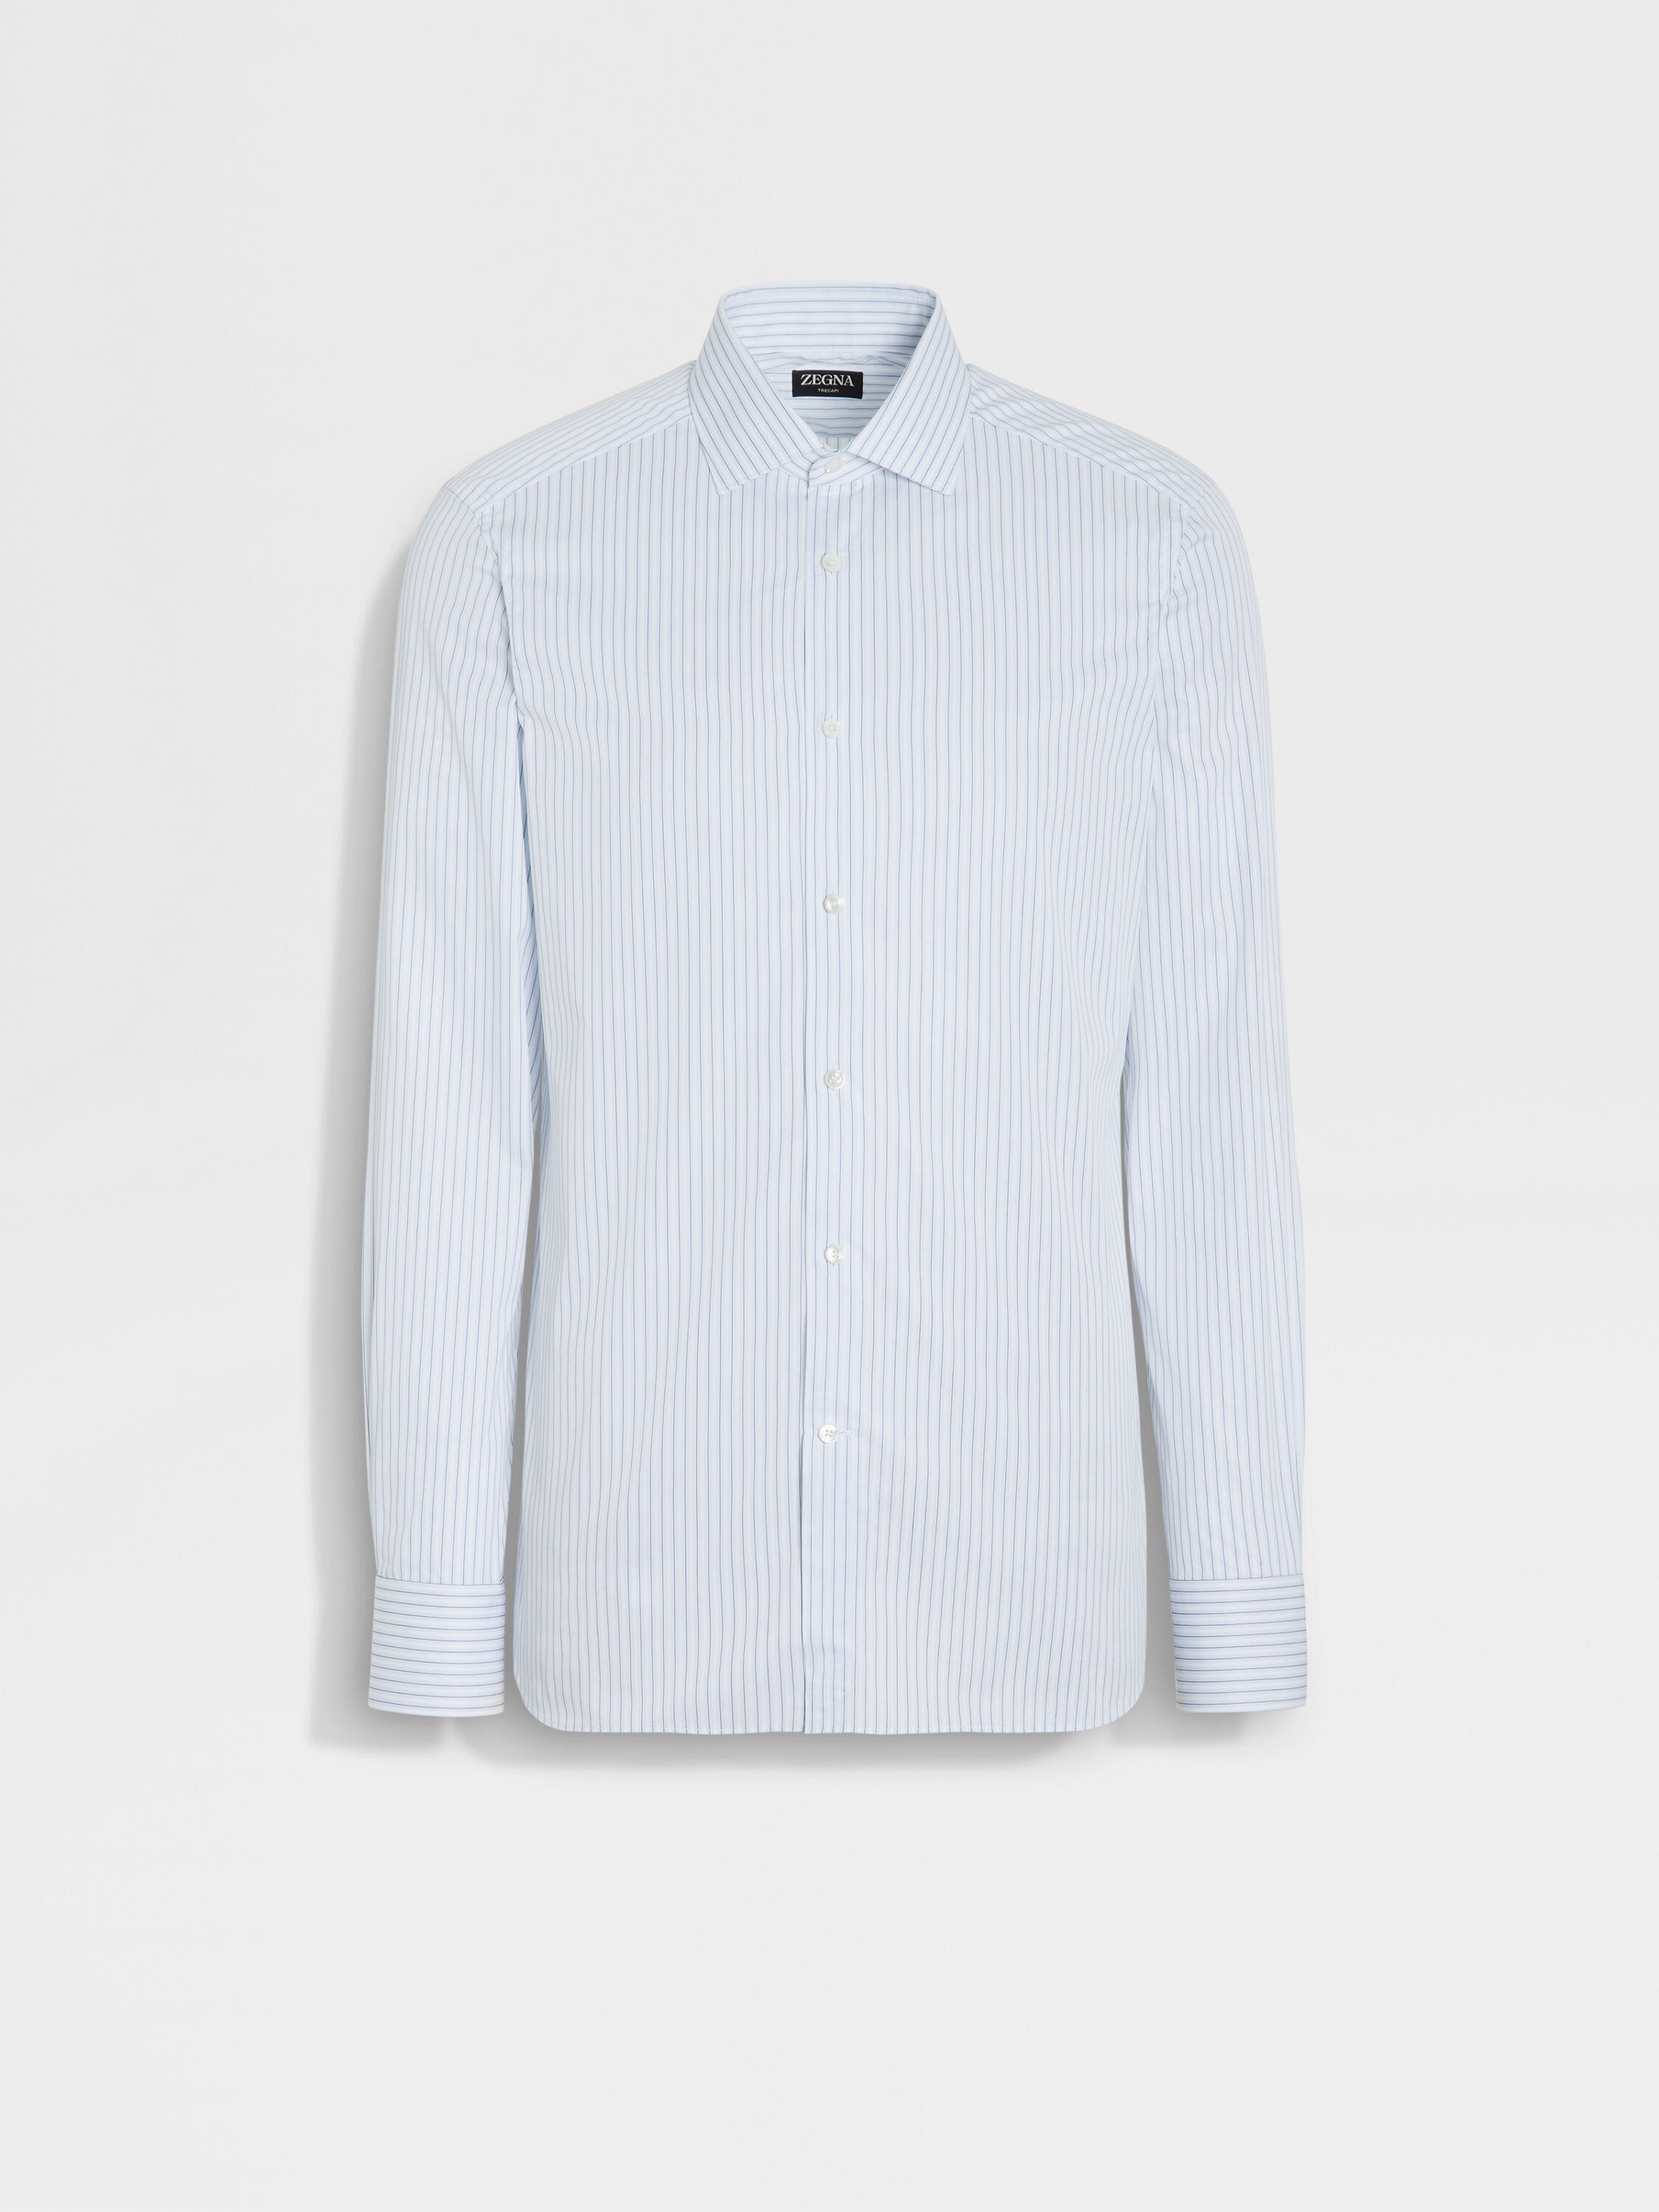 浅蓝色、海军蓝配白色条纹 Trecapi 棉质衬衫